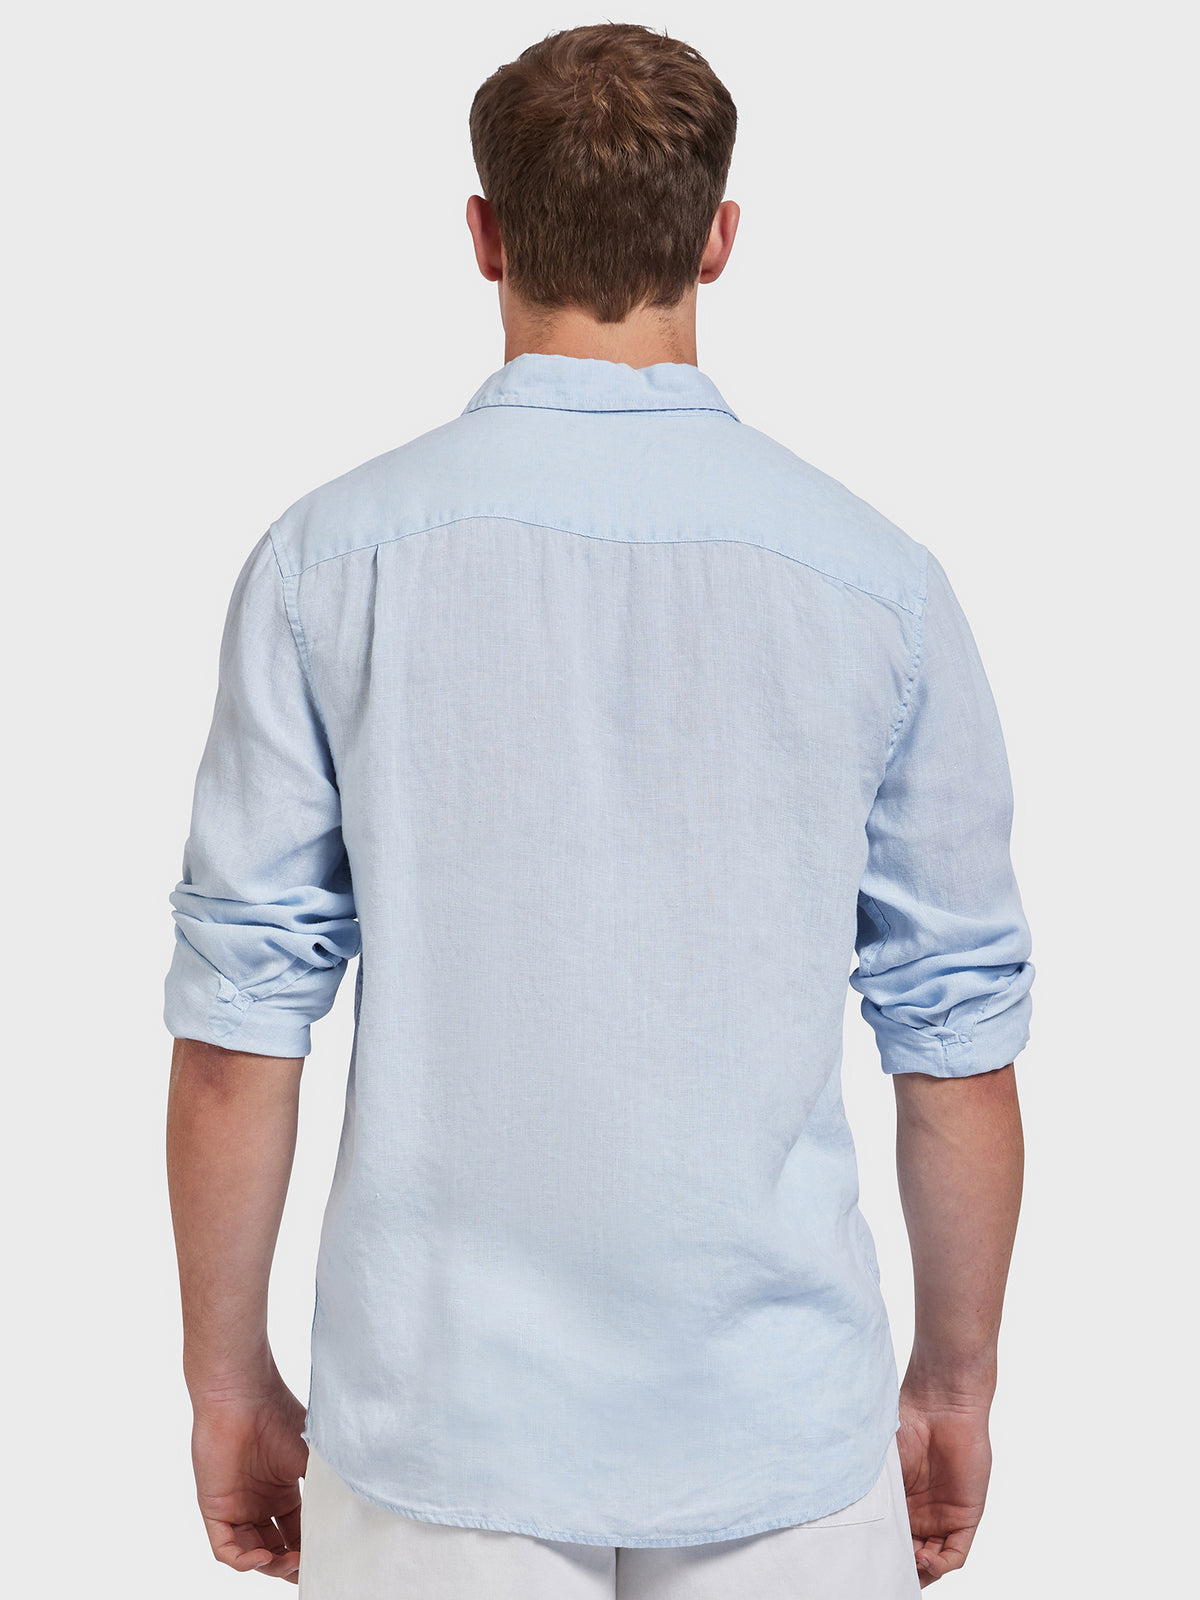 Hampton Linen Shirt in Cloud Blue